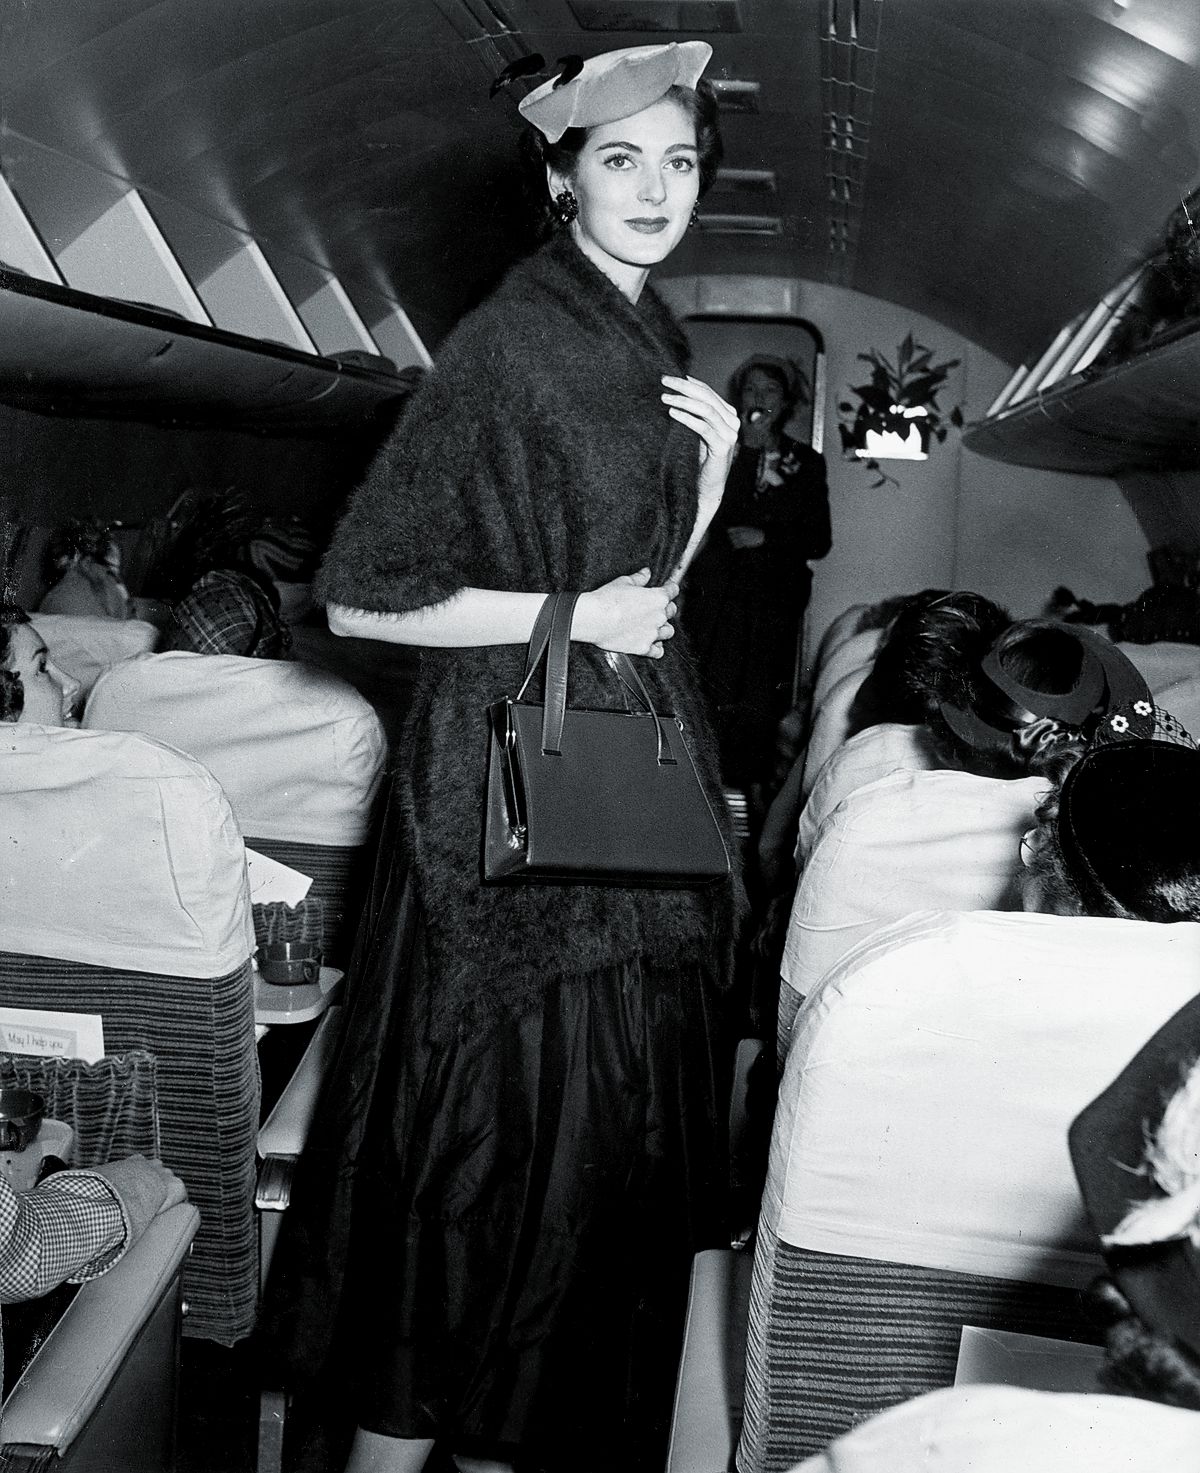 Кармен Делль’Орефиче в шляпе и мохеровом платке, а также с сумочкой идет по проходу самолета